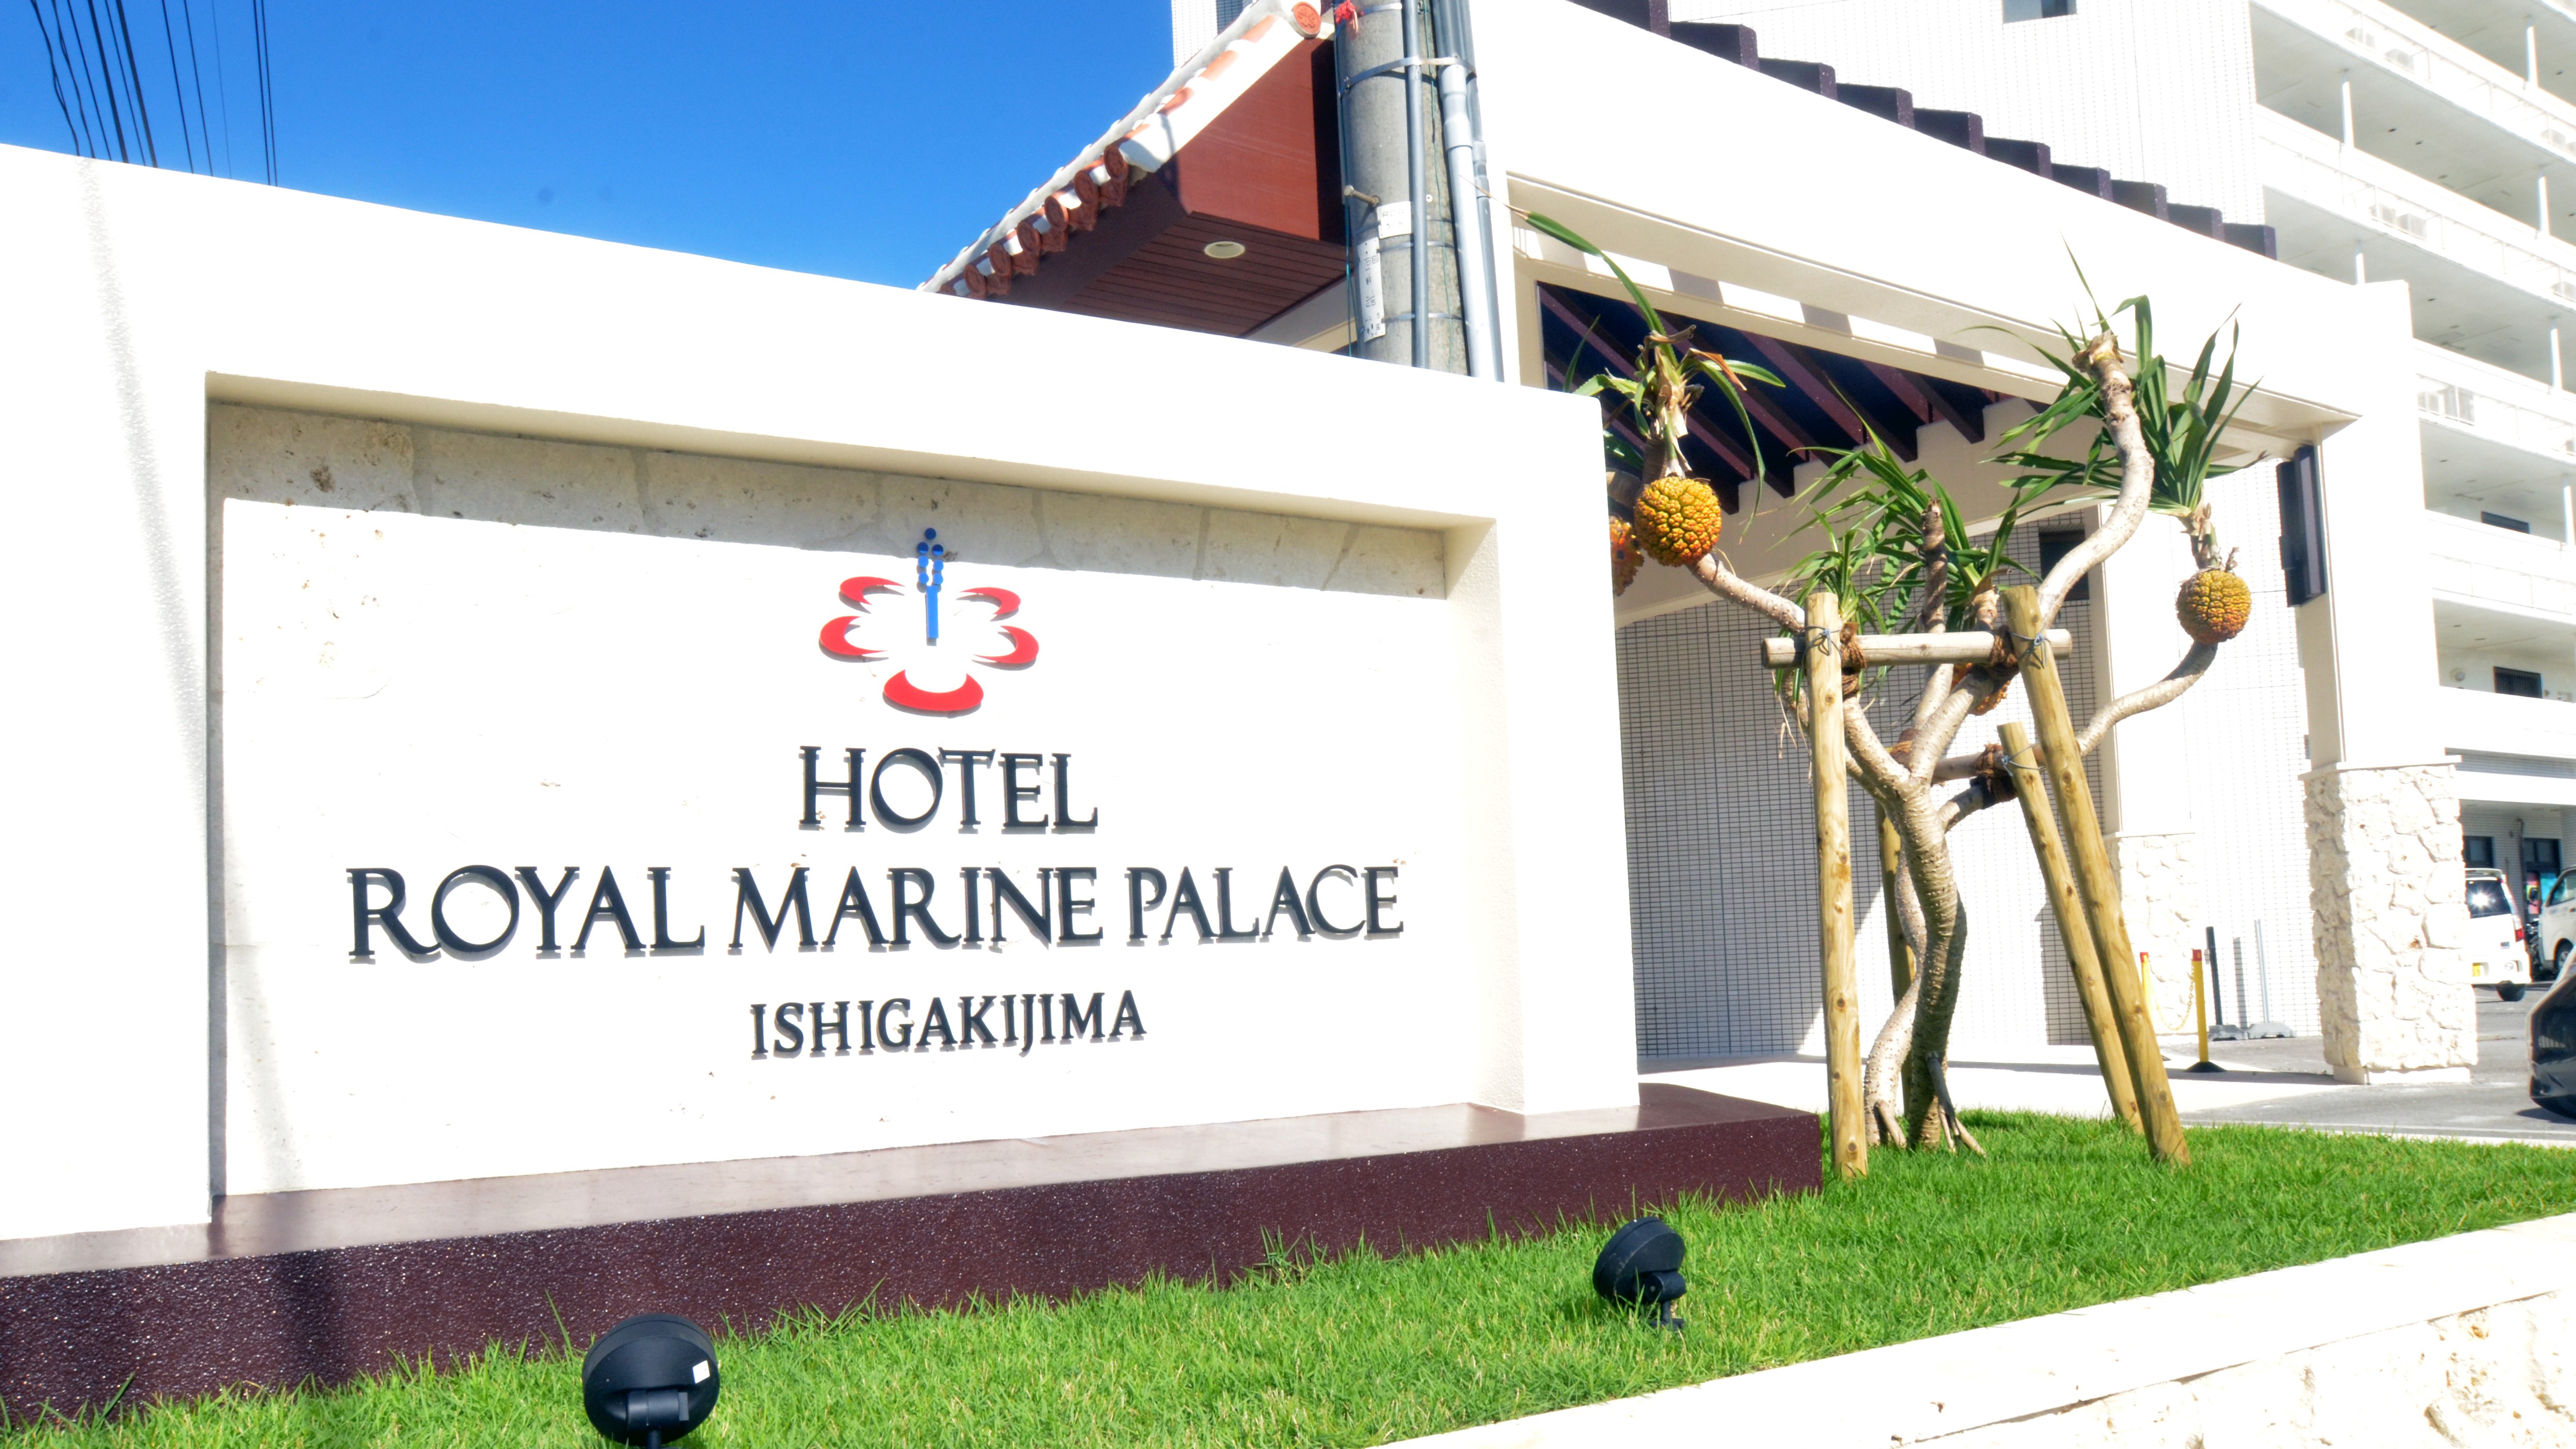 Hotel Royal Marine Palace Ishigakijima